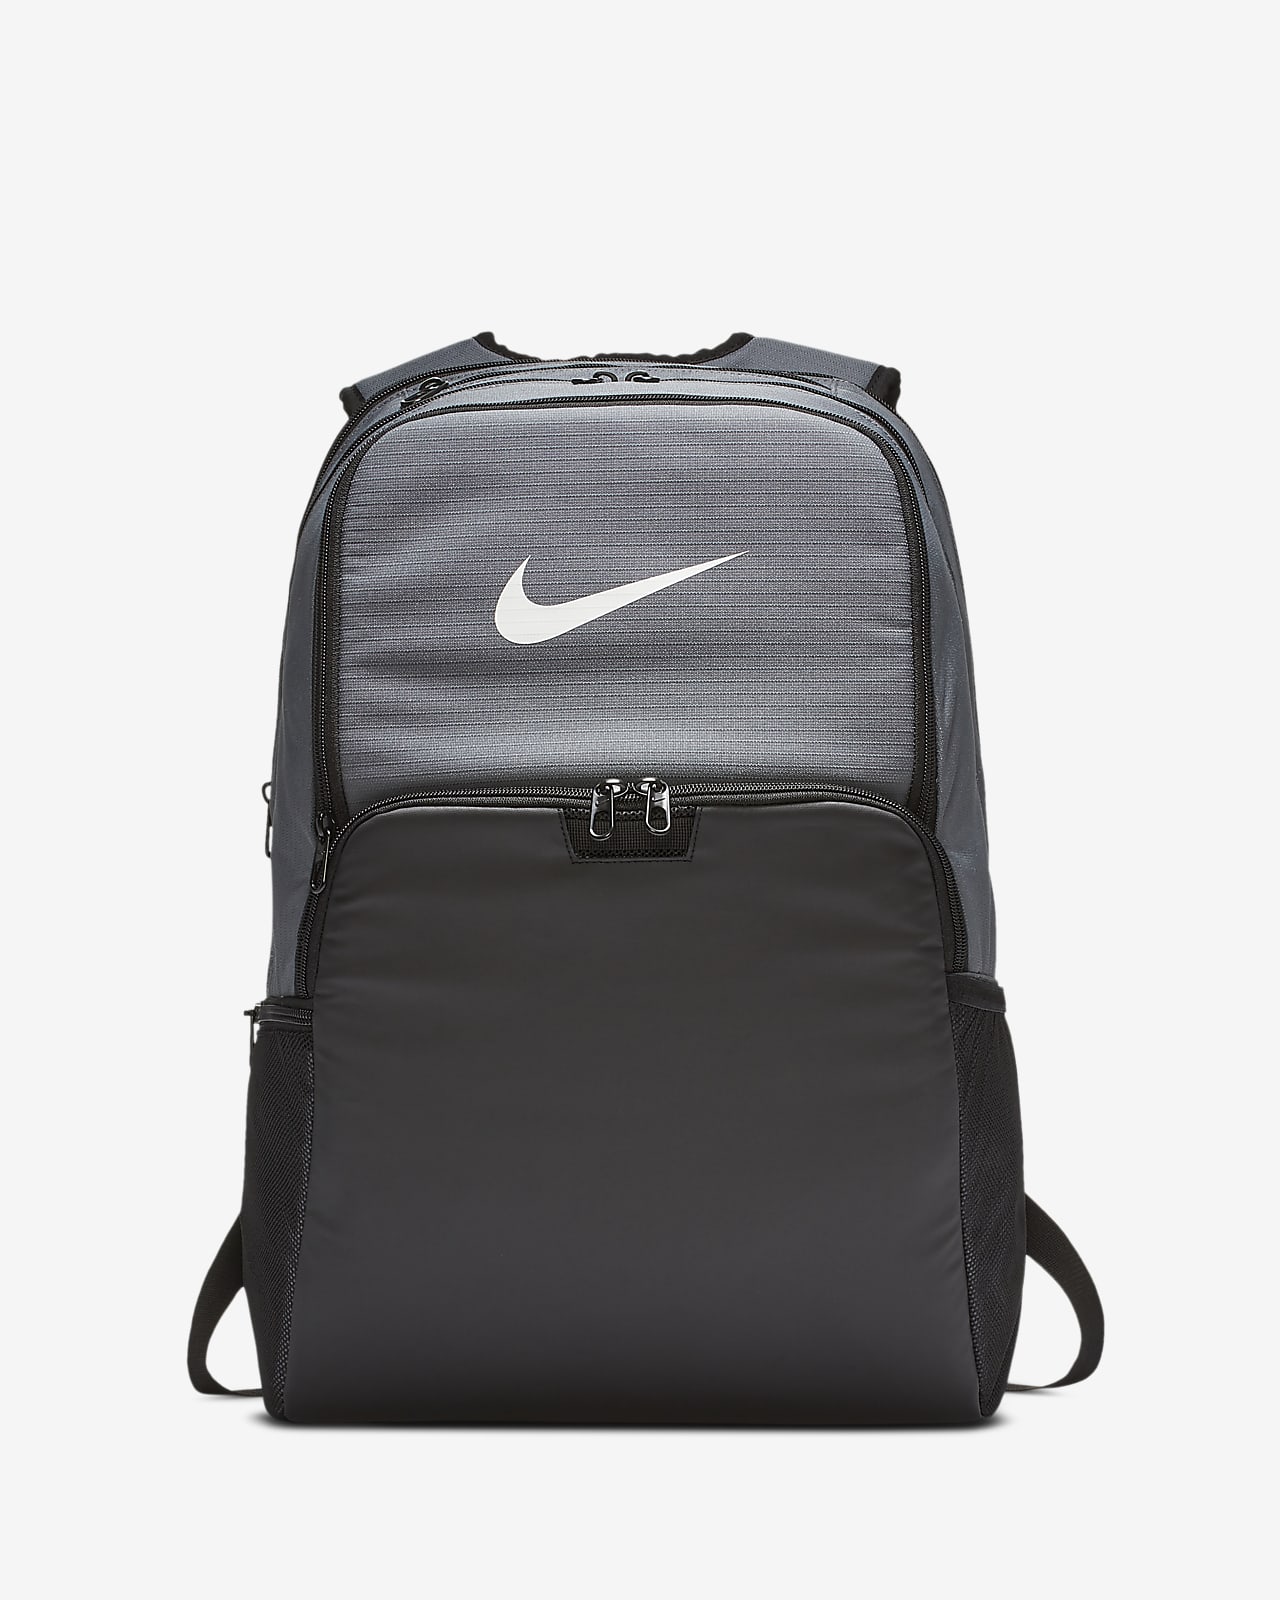 nike extra large backpack